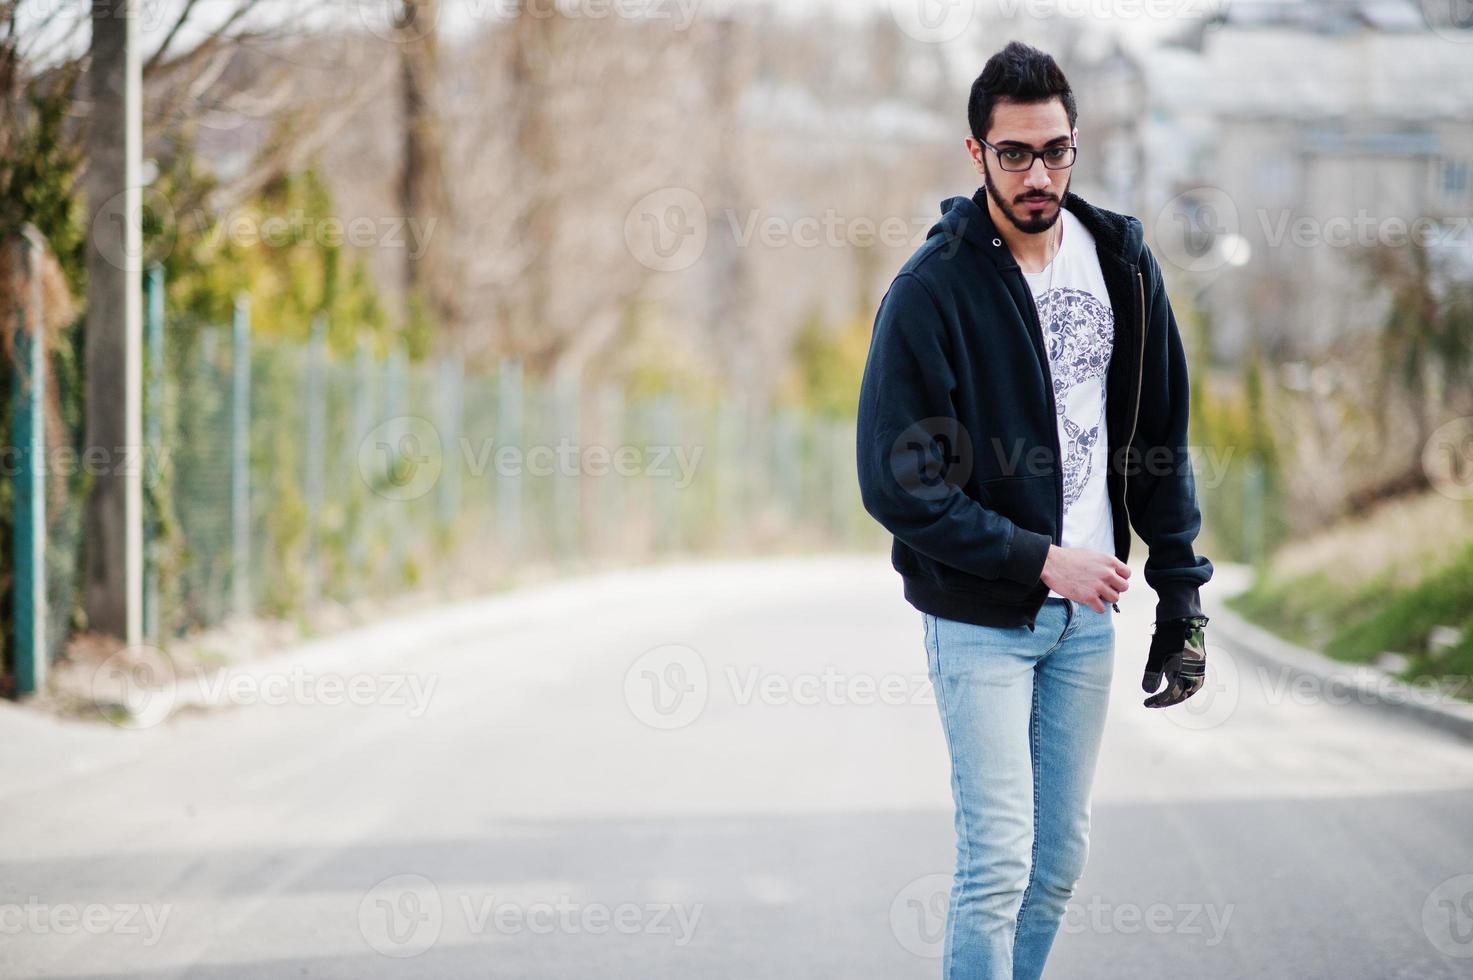 street style arabisk man i glasögon med longboard longboarding på vägen. foto